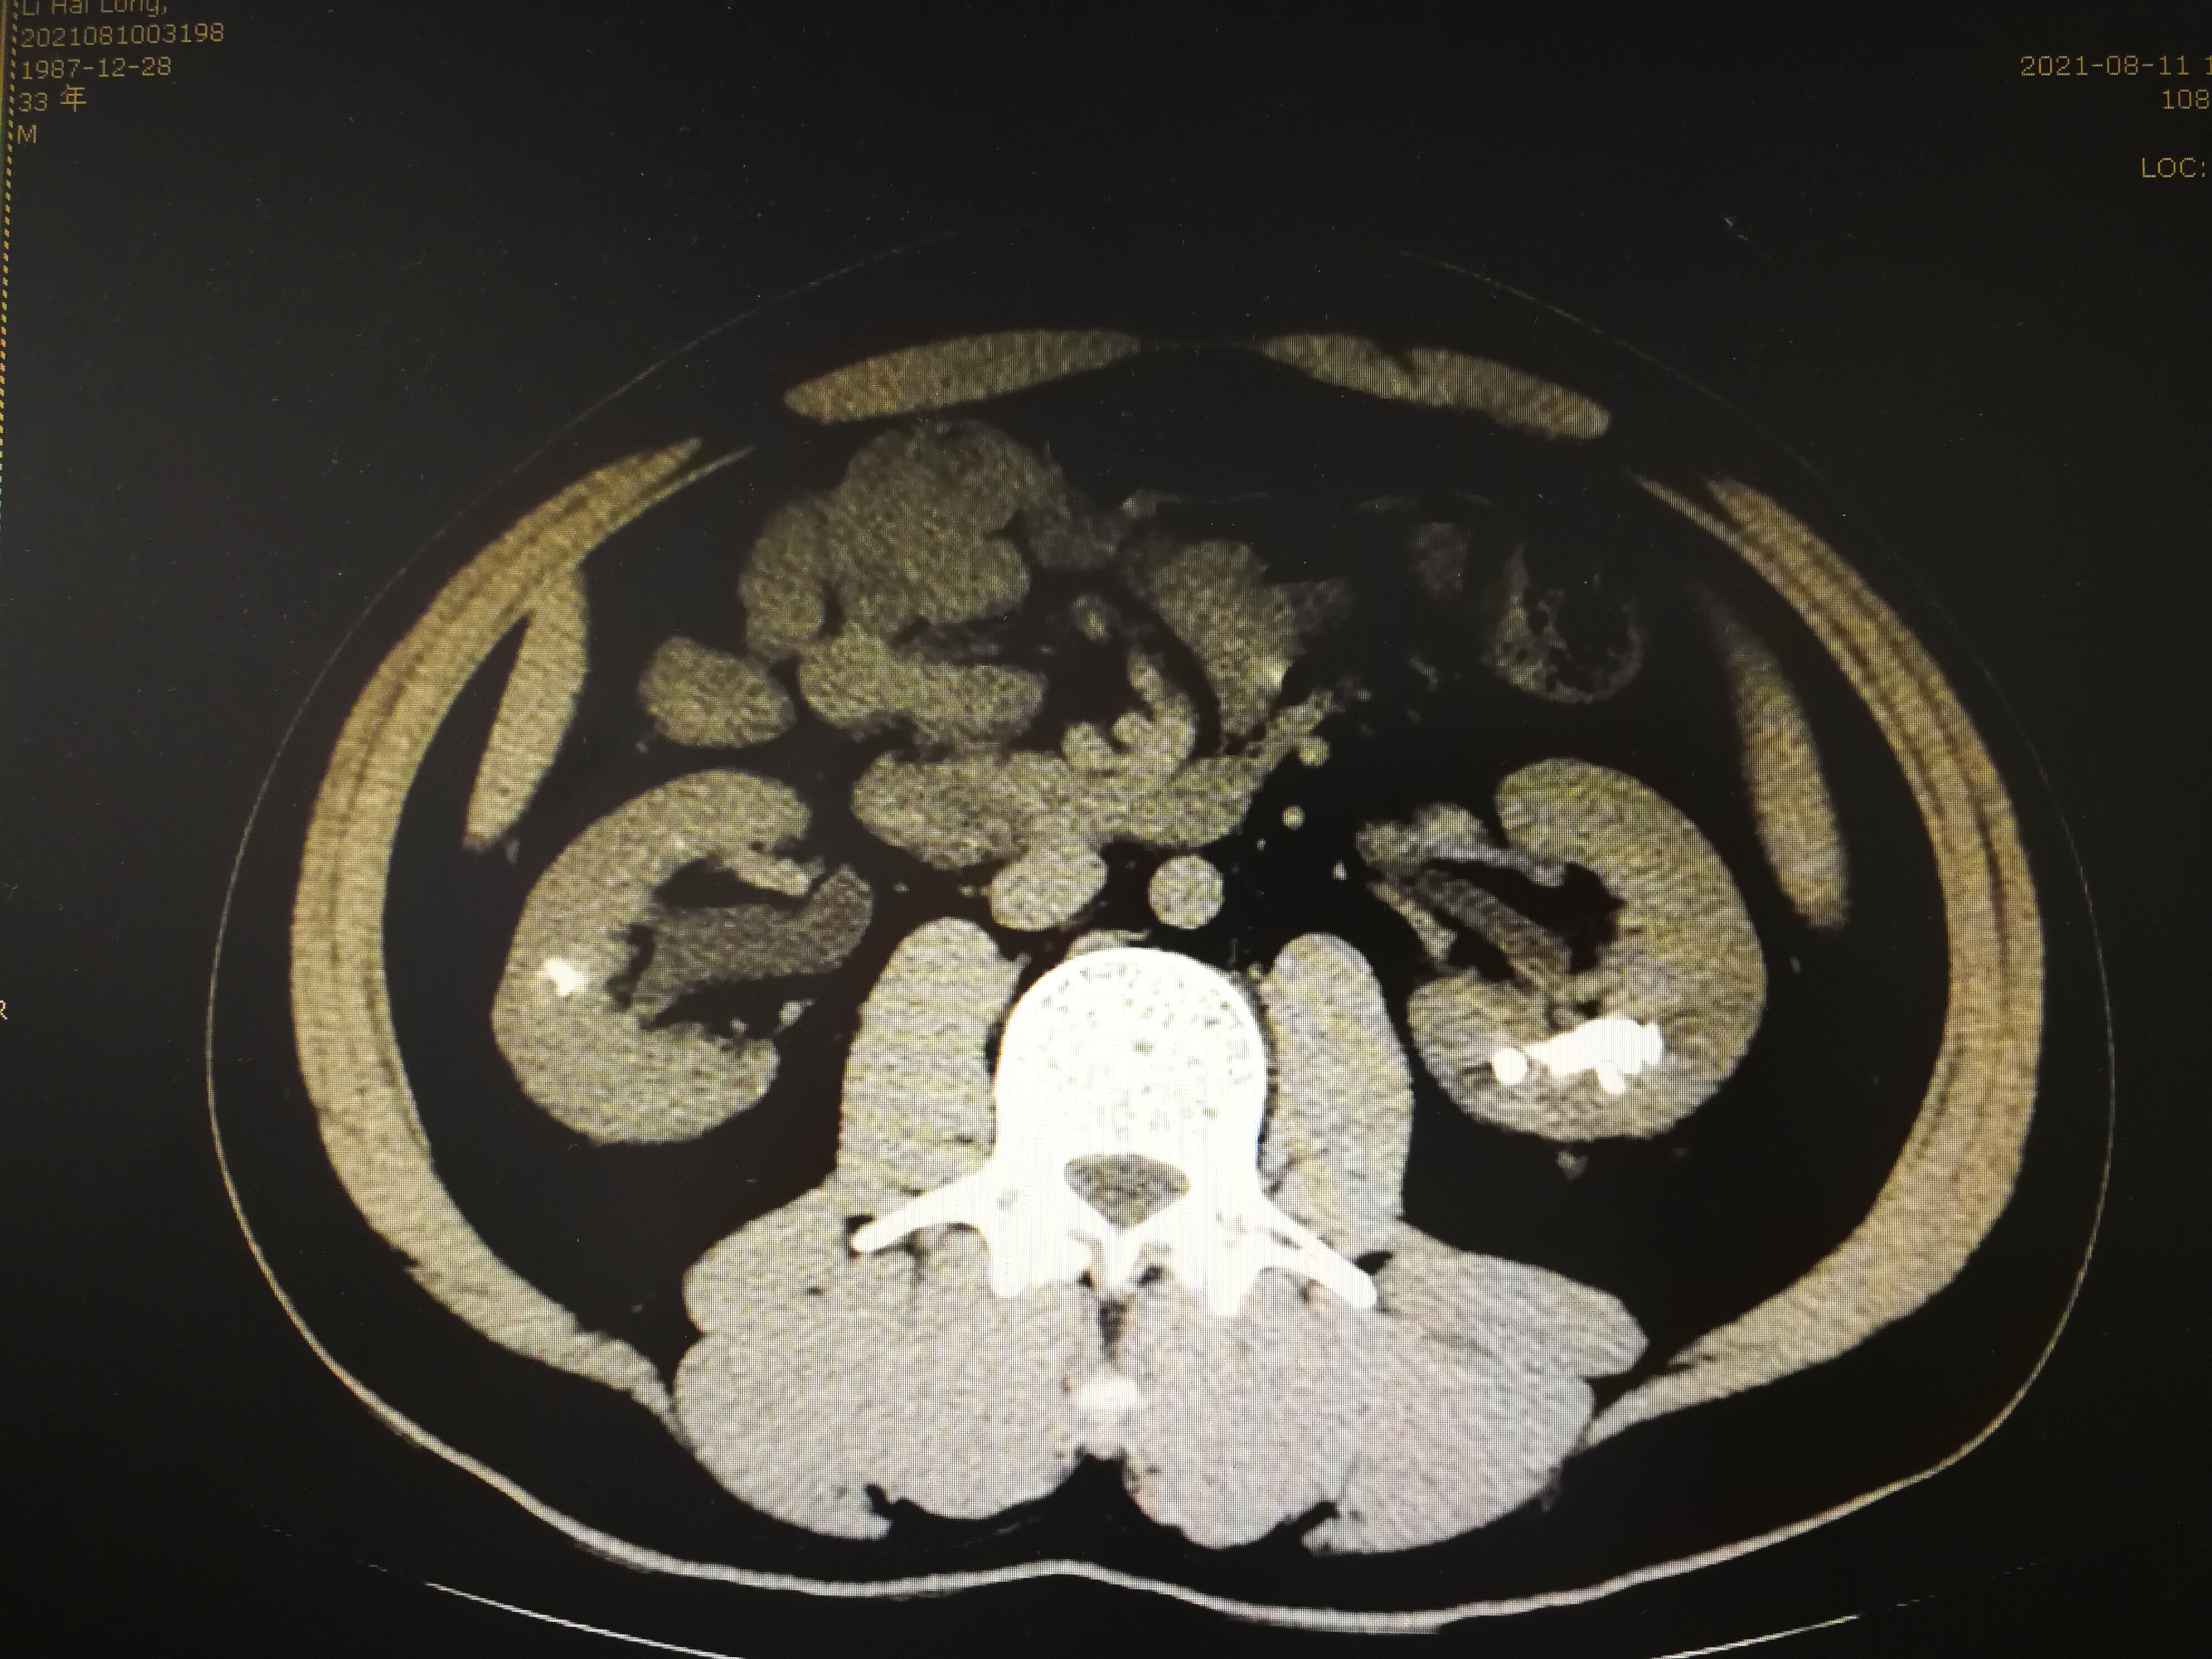 髓质海绵肾CT图片